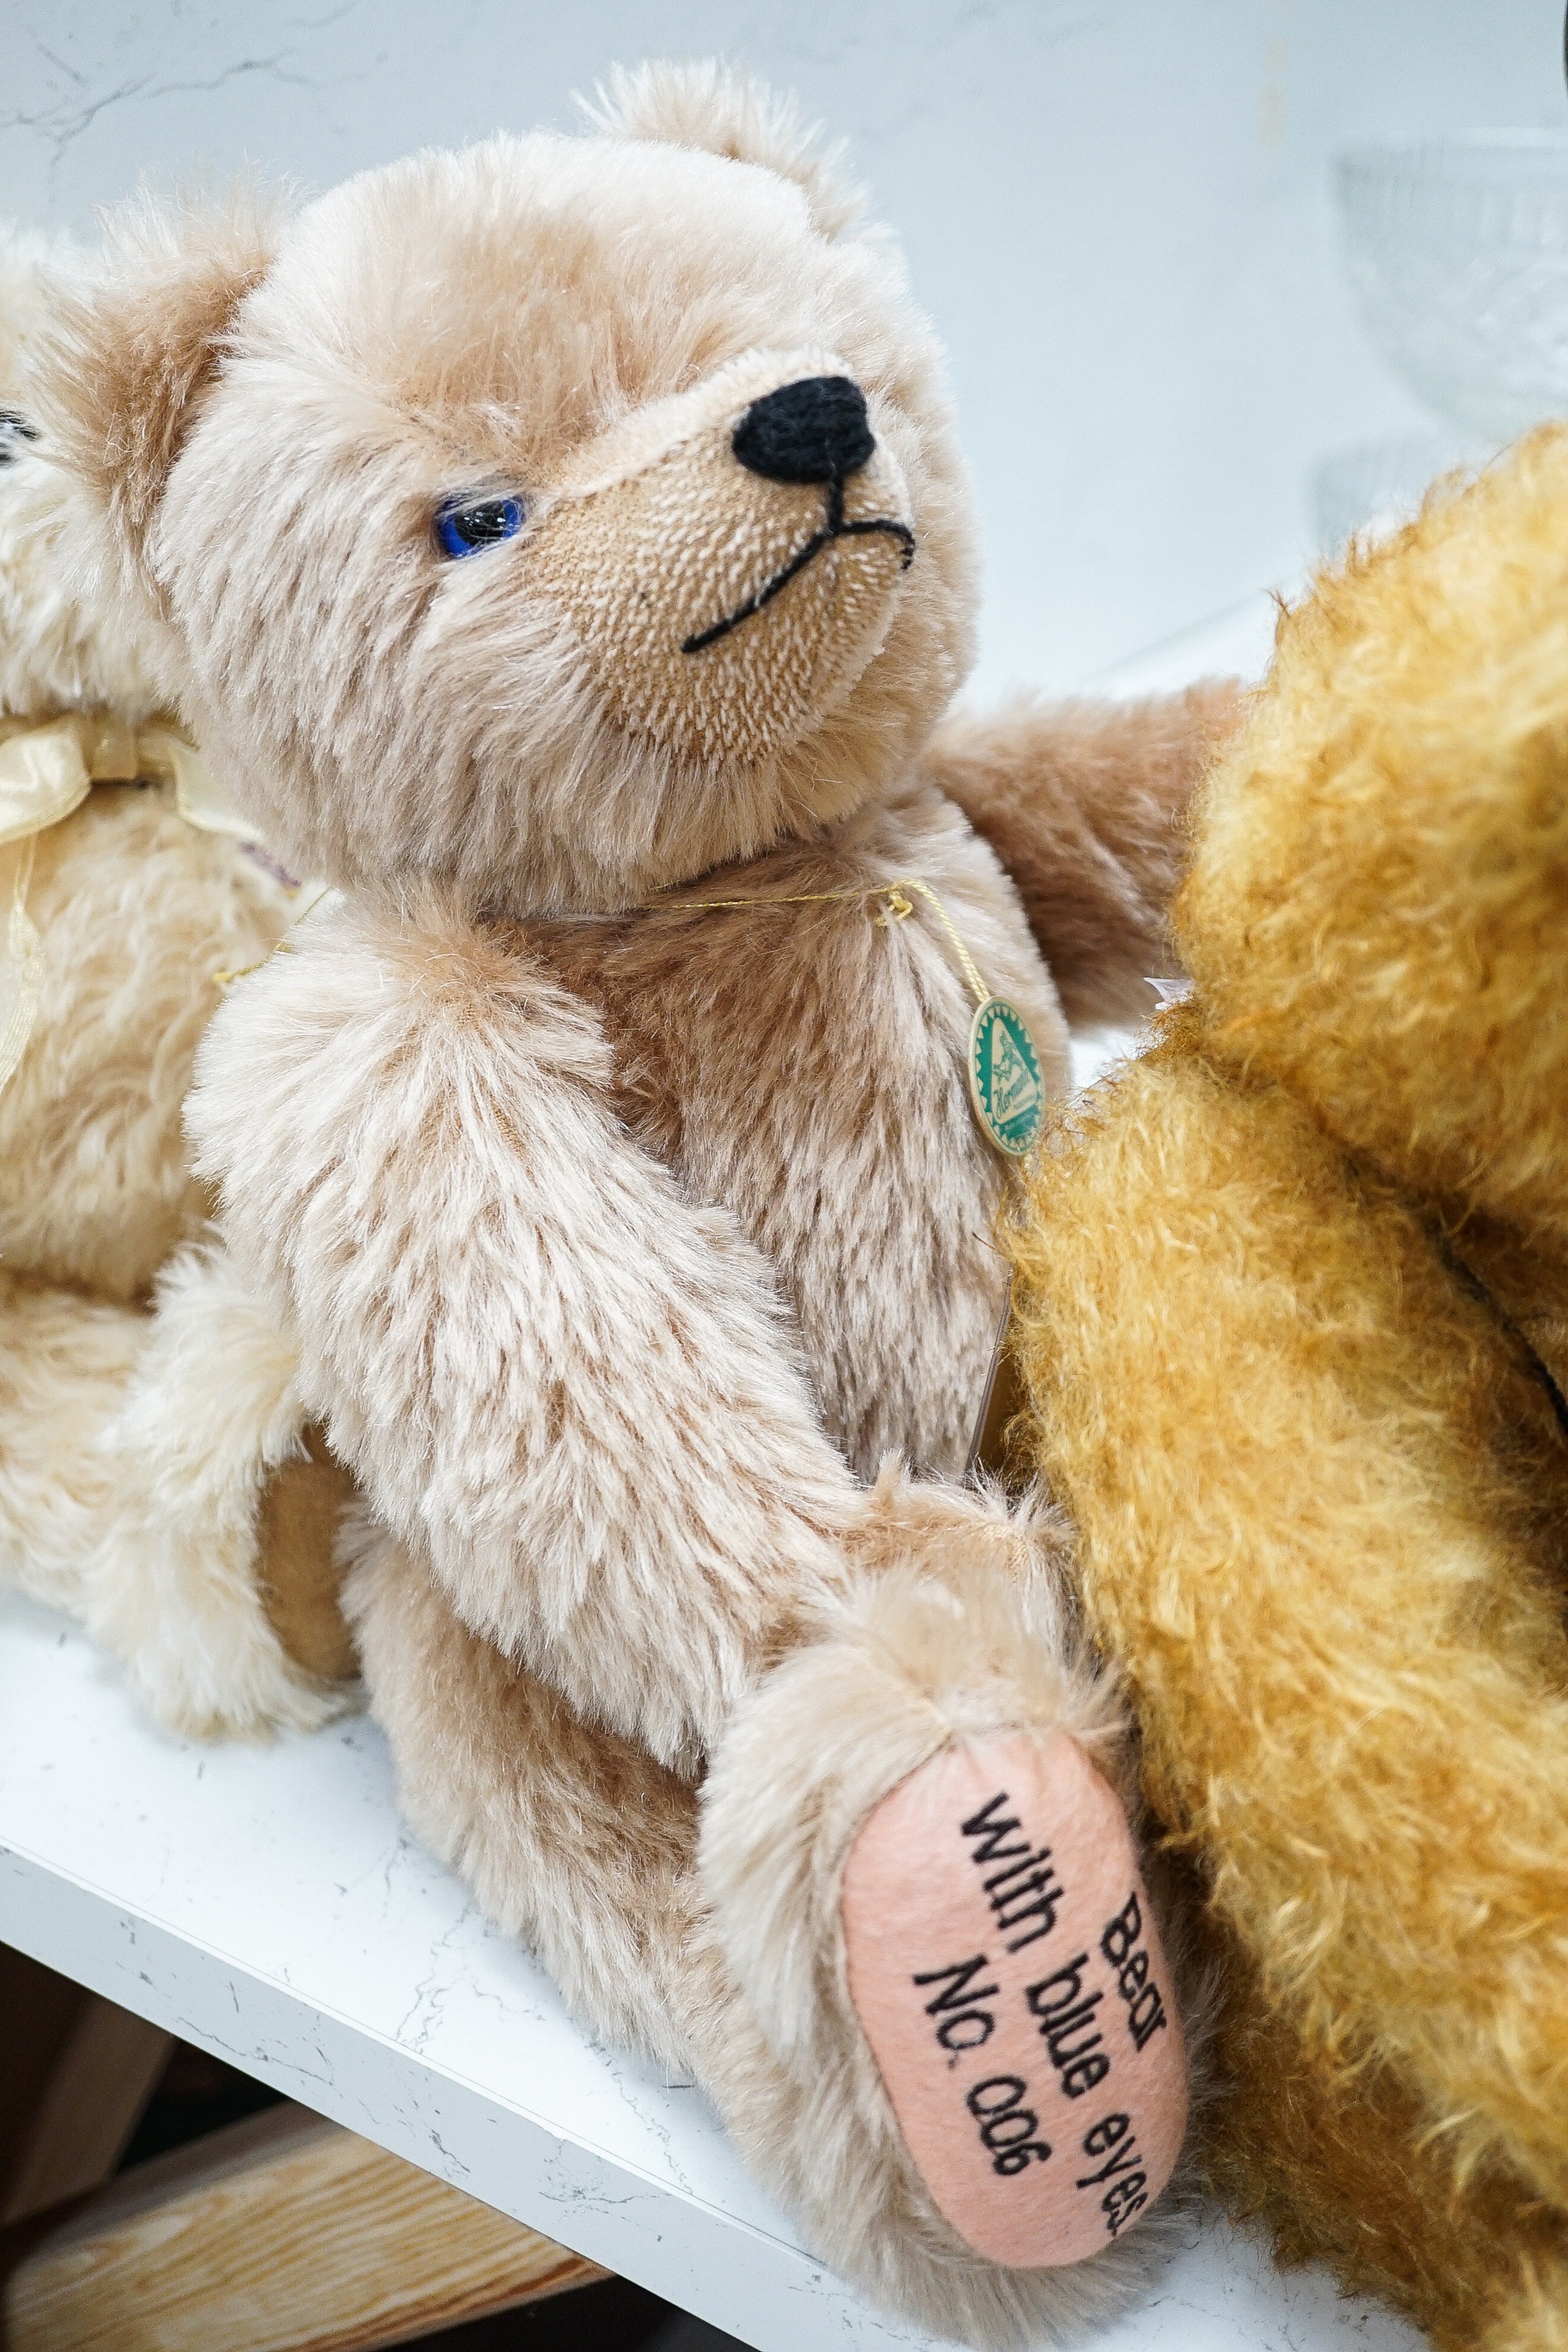 Four Deans teddy bears, a Steiff teddy and a Hermann teddy, Steiff bear, 39 cms high.